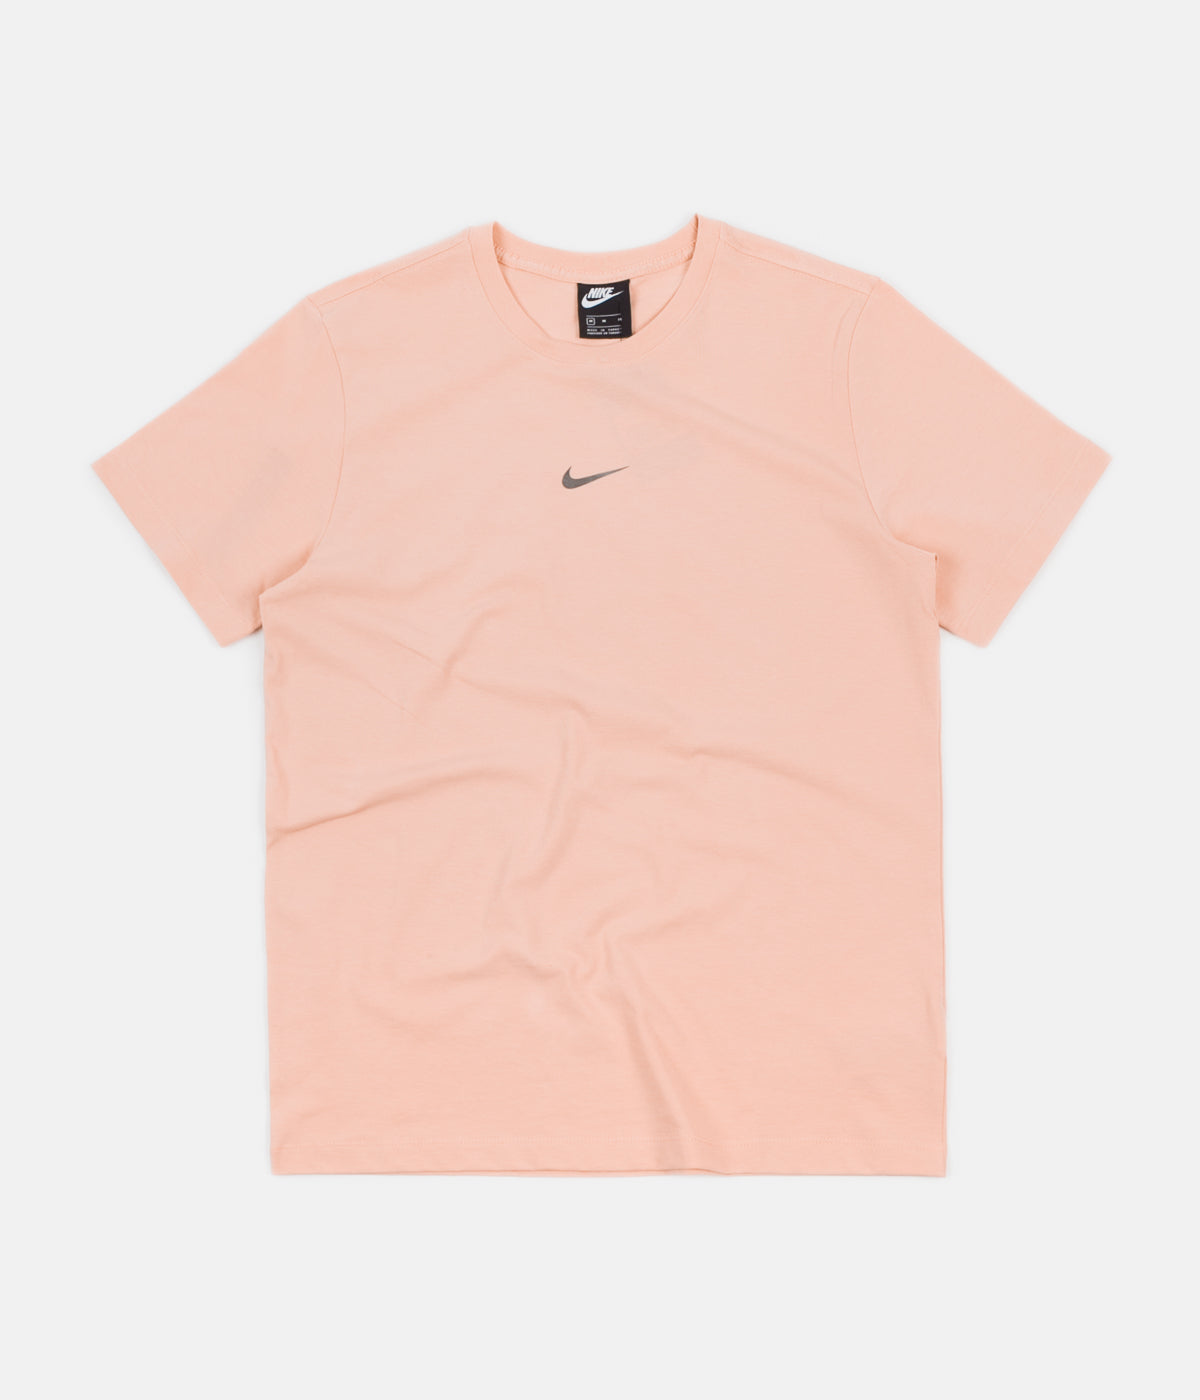 nike peach t shirt